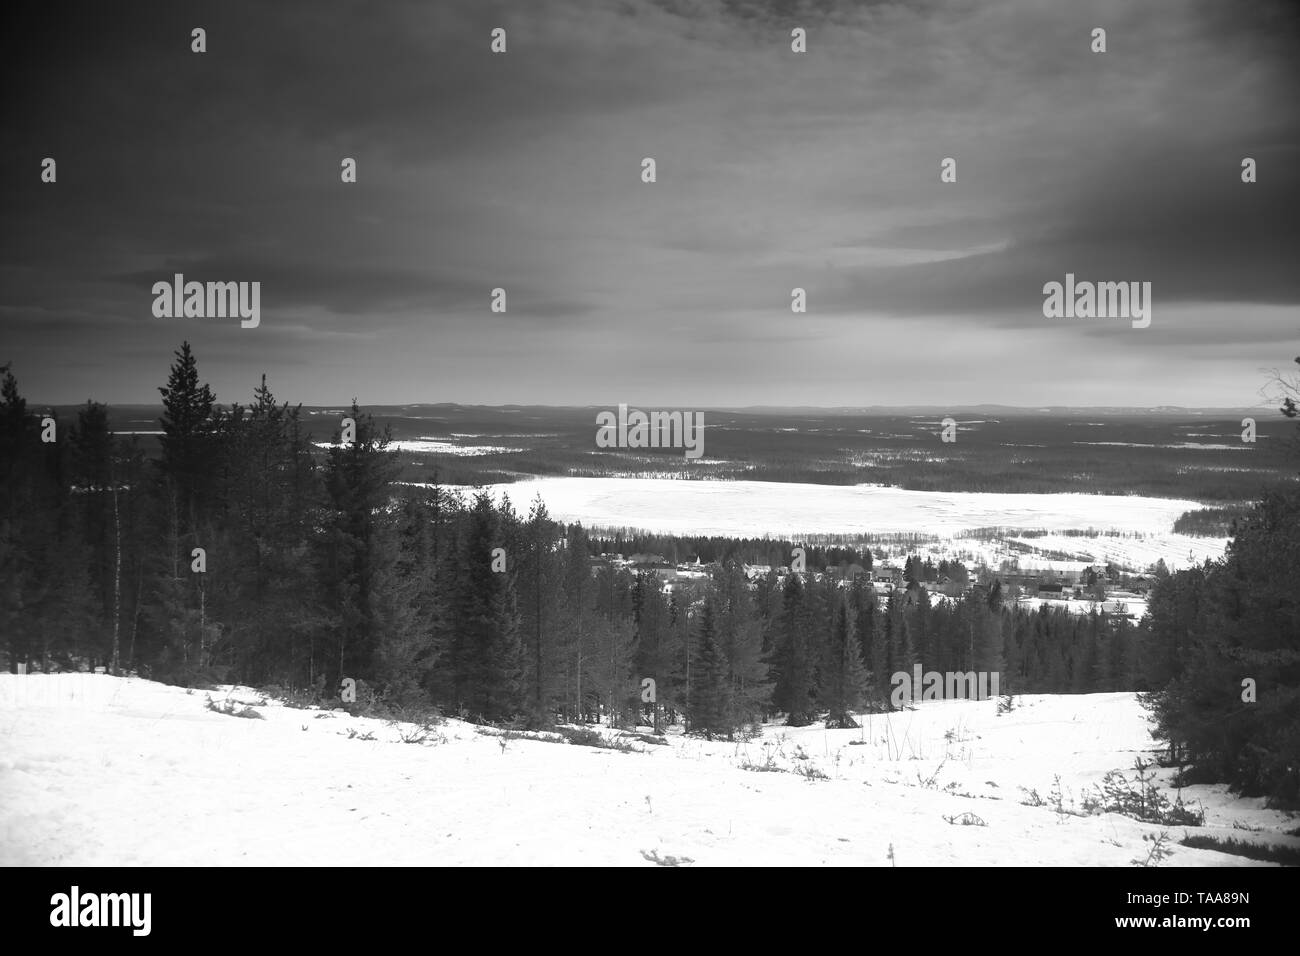 Vieille photo en noir et blanc de la montagne près de Glommersberget Glommerstrask en Laponie, Suède. Banque D'Images